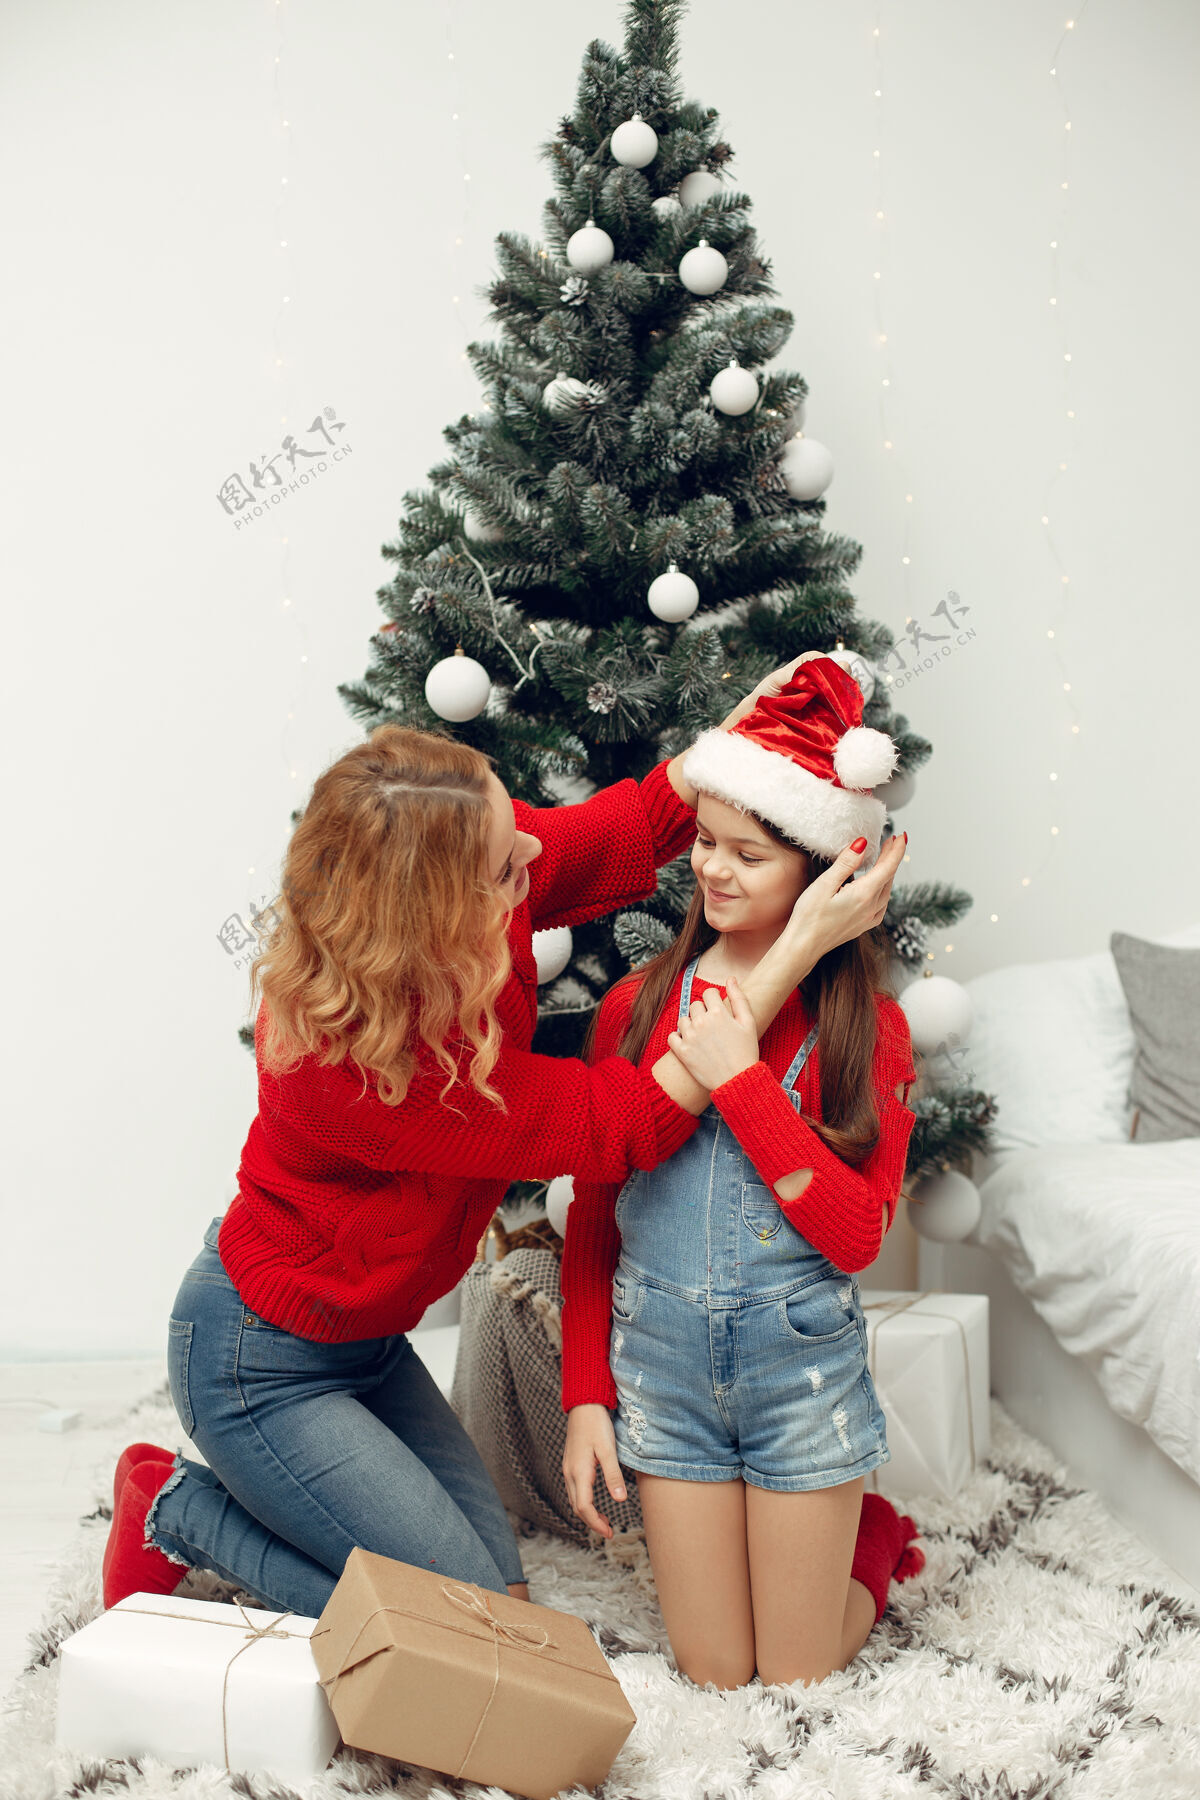 花环人们在为圣诞节做准备母亲在和女儿玩耍一家人在节日的房间里休息孩子穿着红色毛衣节日亮光小